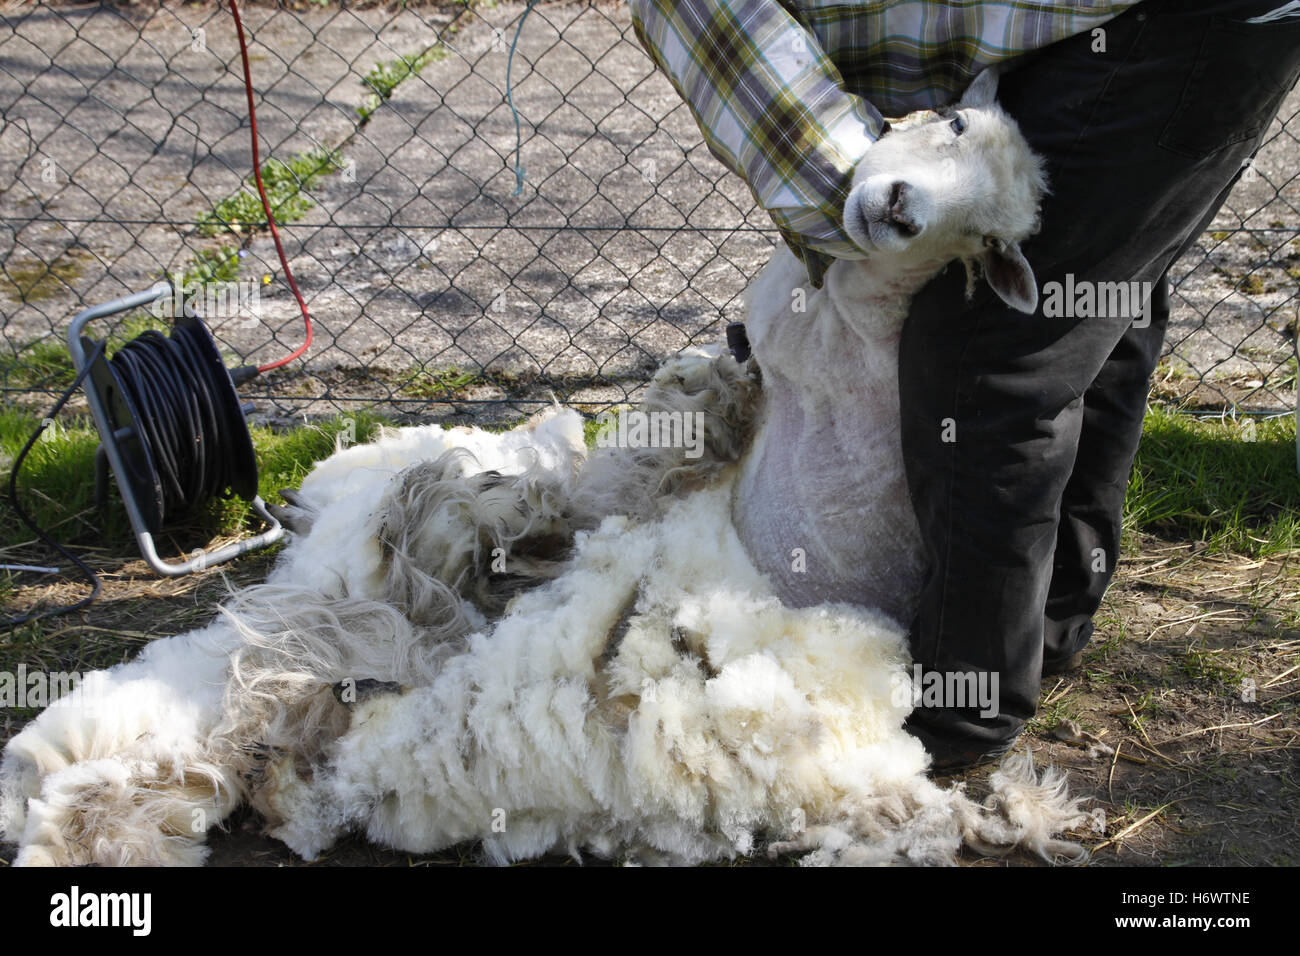 Pecore pastorizia cesoia di taglio landlive pastore allevamento shearer pecore allevamento di ovini la tosatura delle pecore, cura di taglio Foto Stock